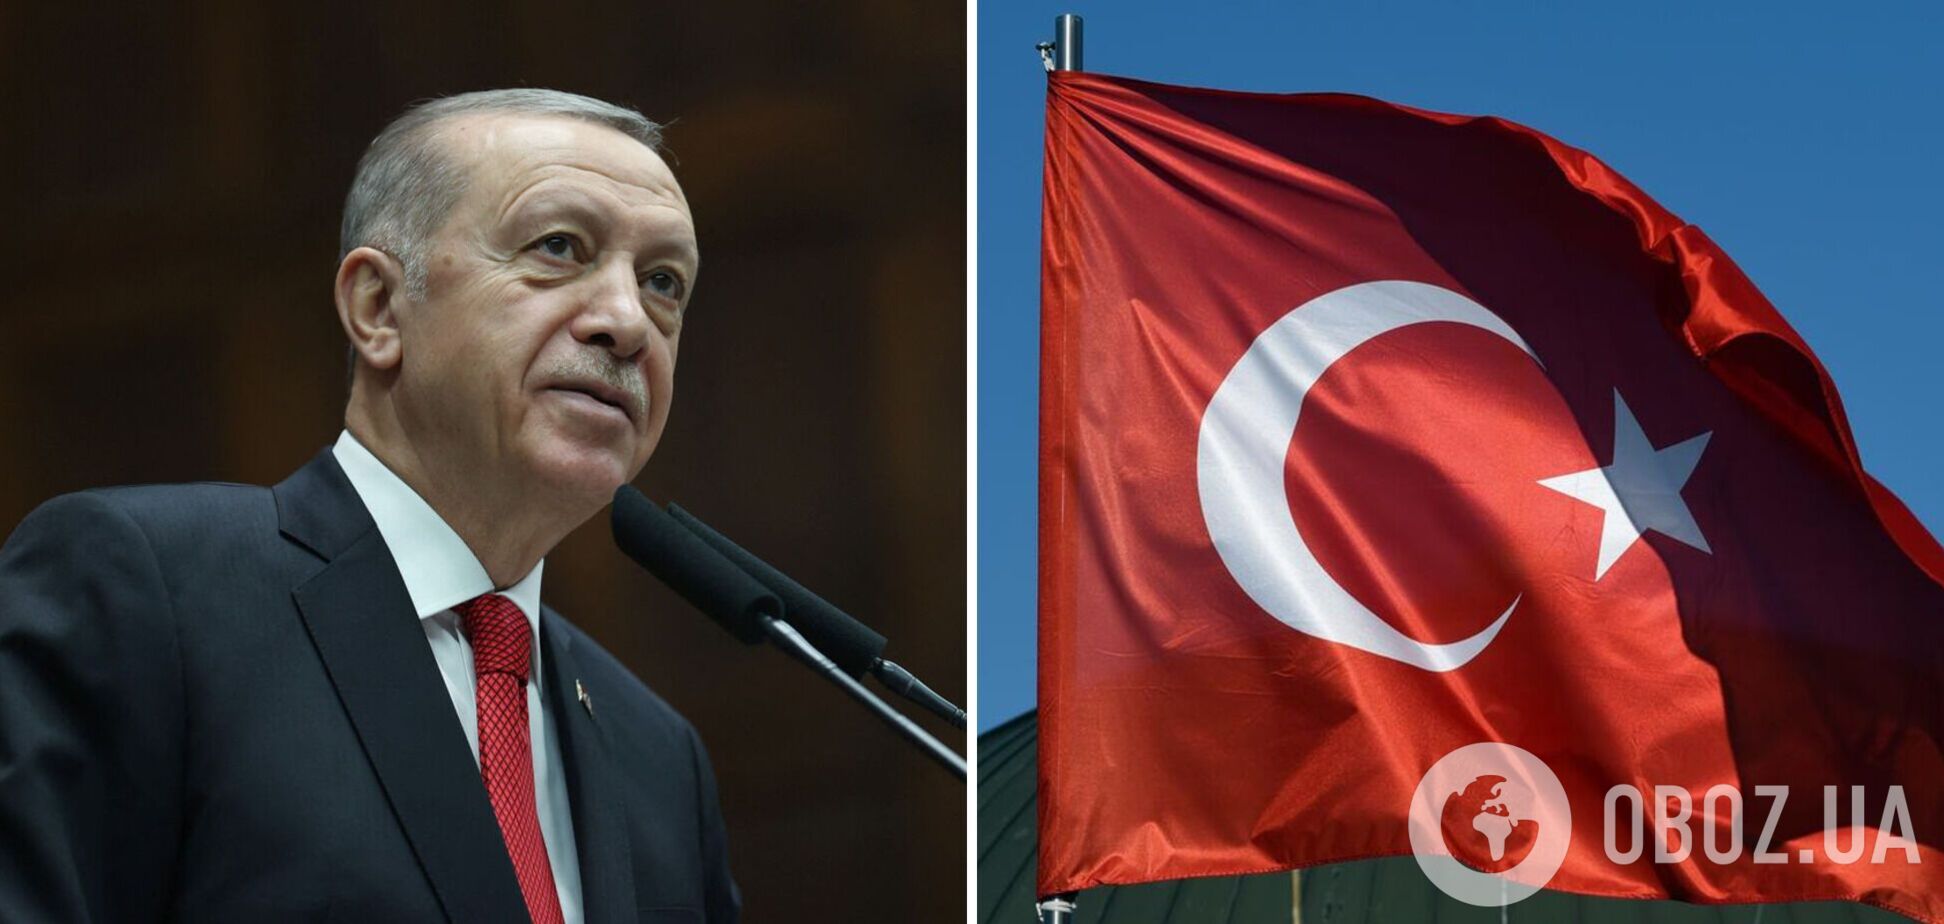 Перемога Ердогана продемонструвала: тепер в світі є три демократії